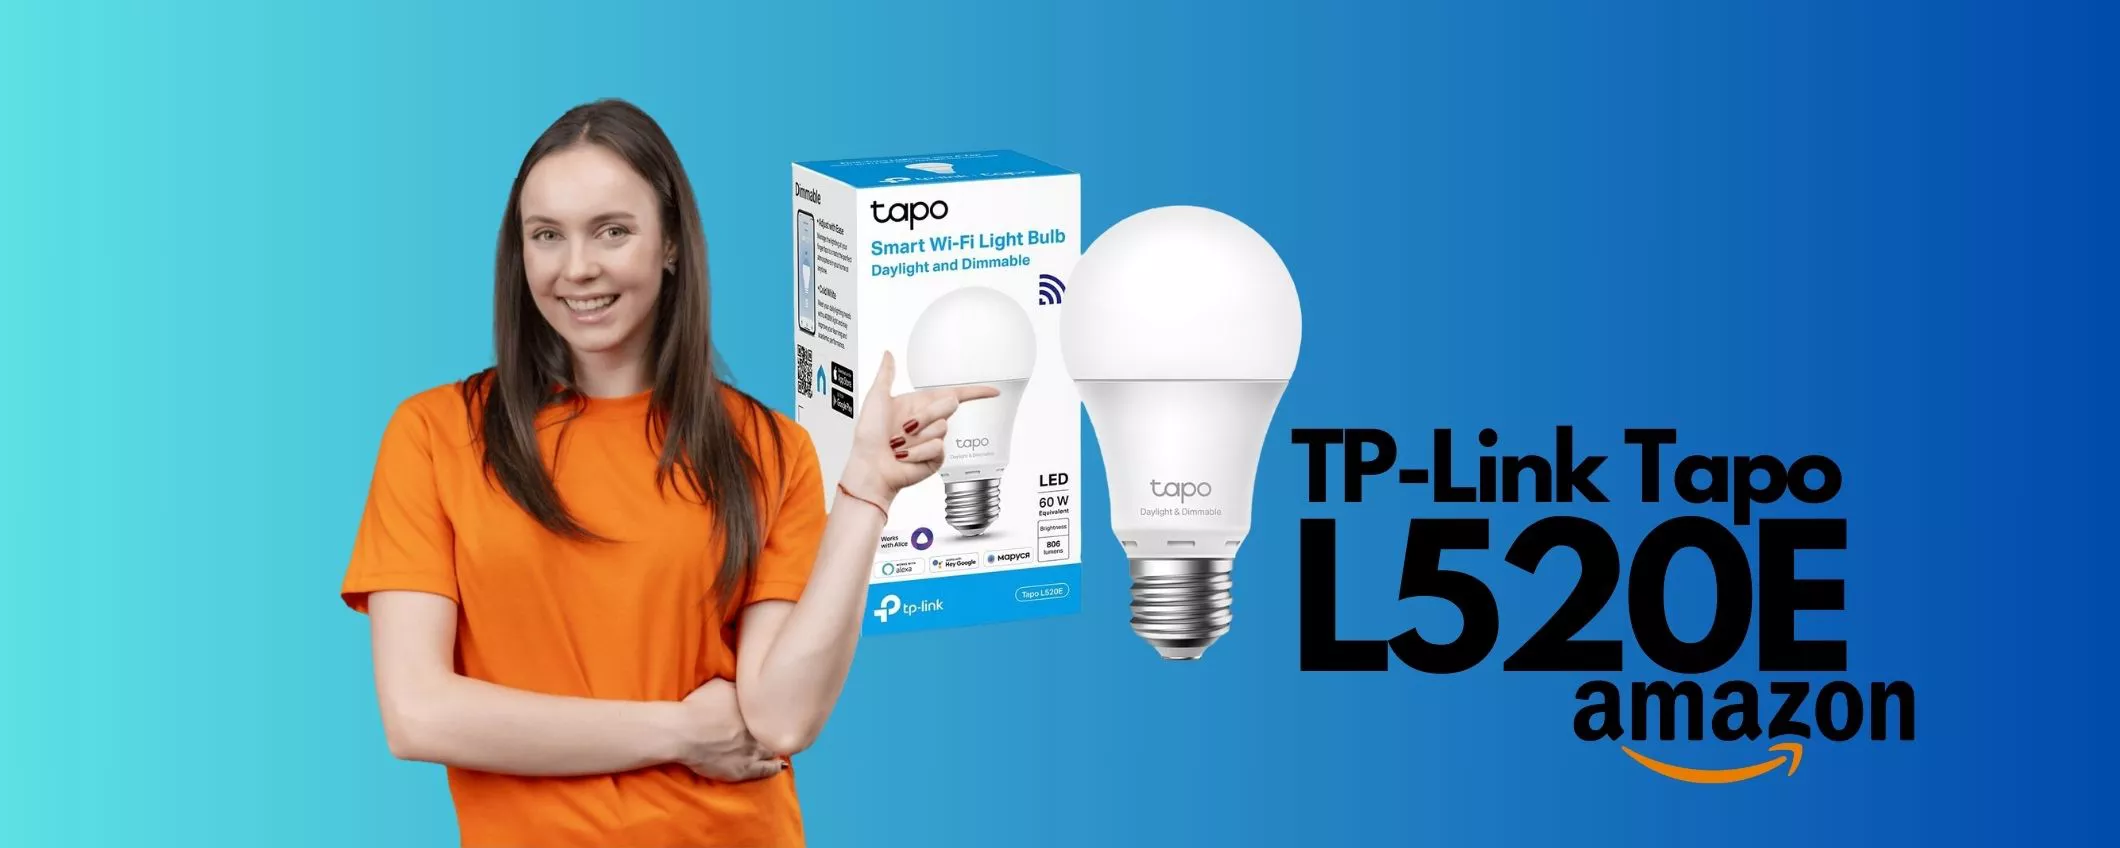 Lampadina SMART TP-Link Tapo L520E (8€), la soluzione all'avanguardia per  la tua casa SMART - Webnews